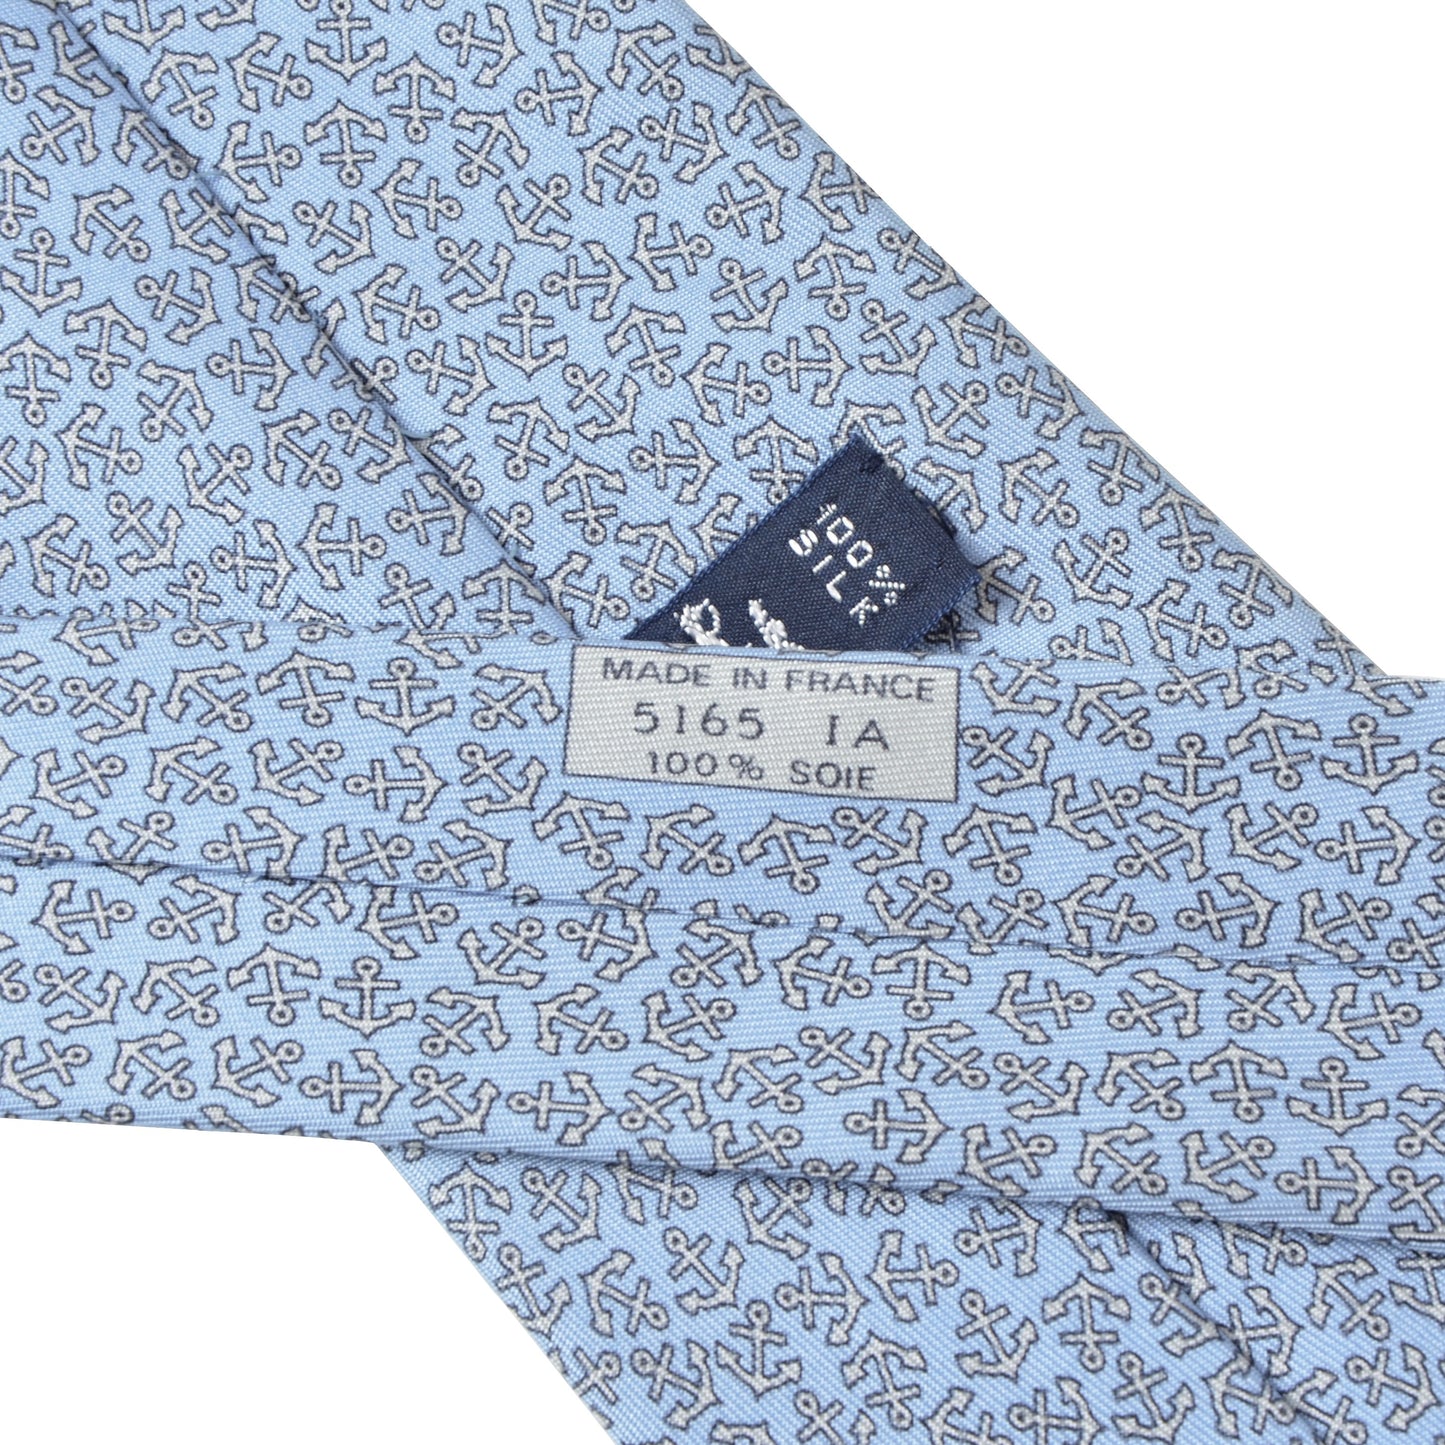 Hermès Paris Silk Tie 5165 IA - Light Blue